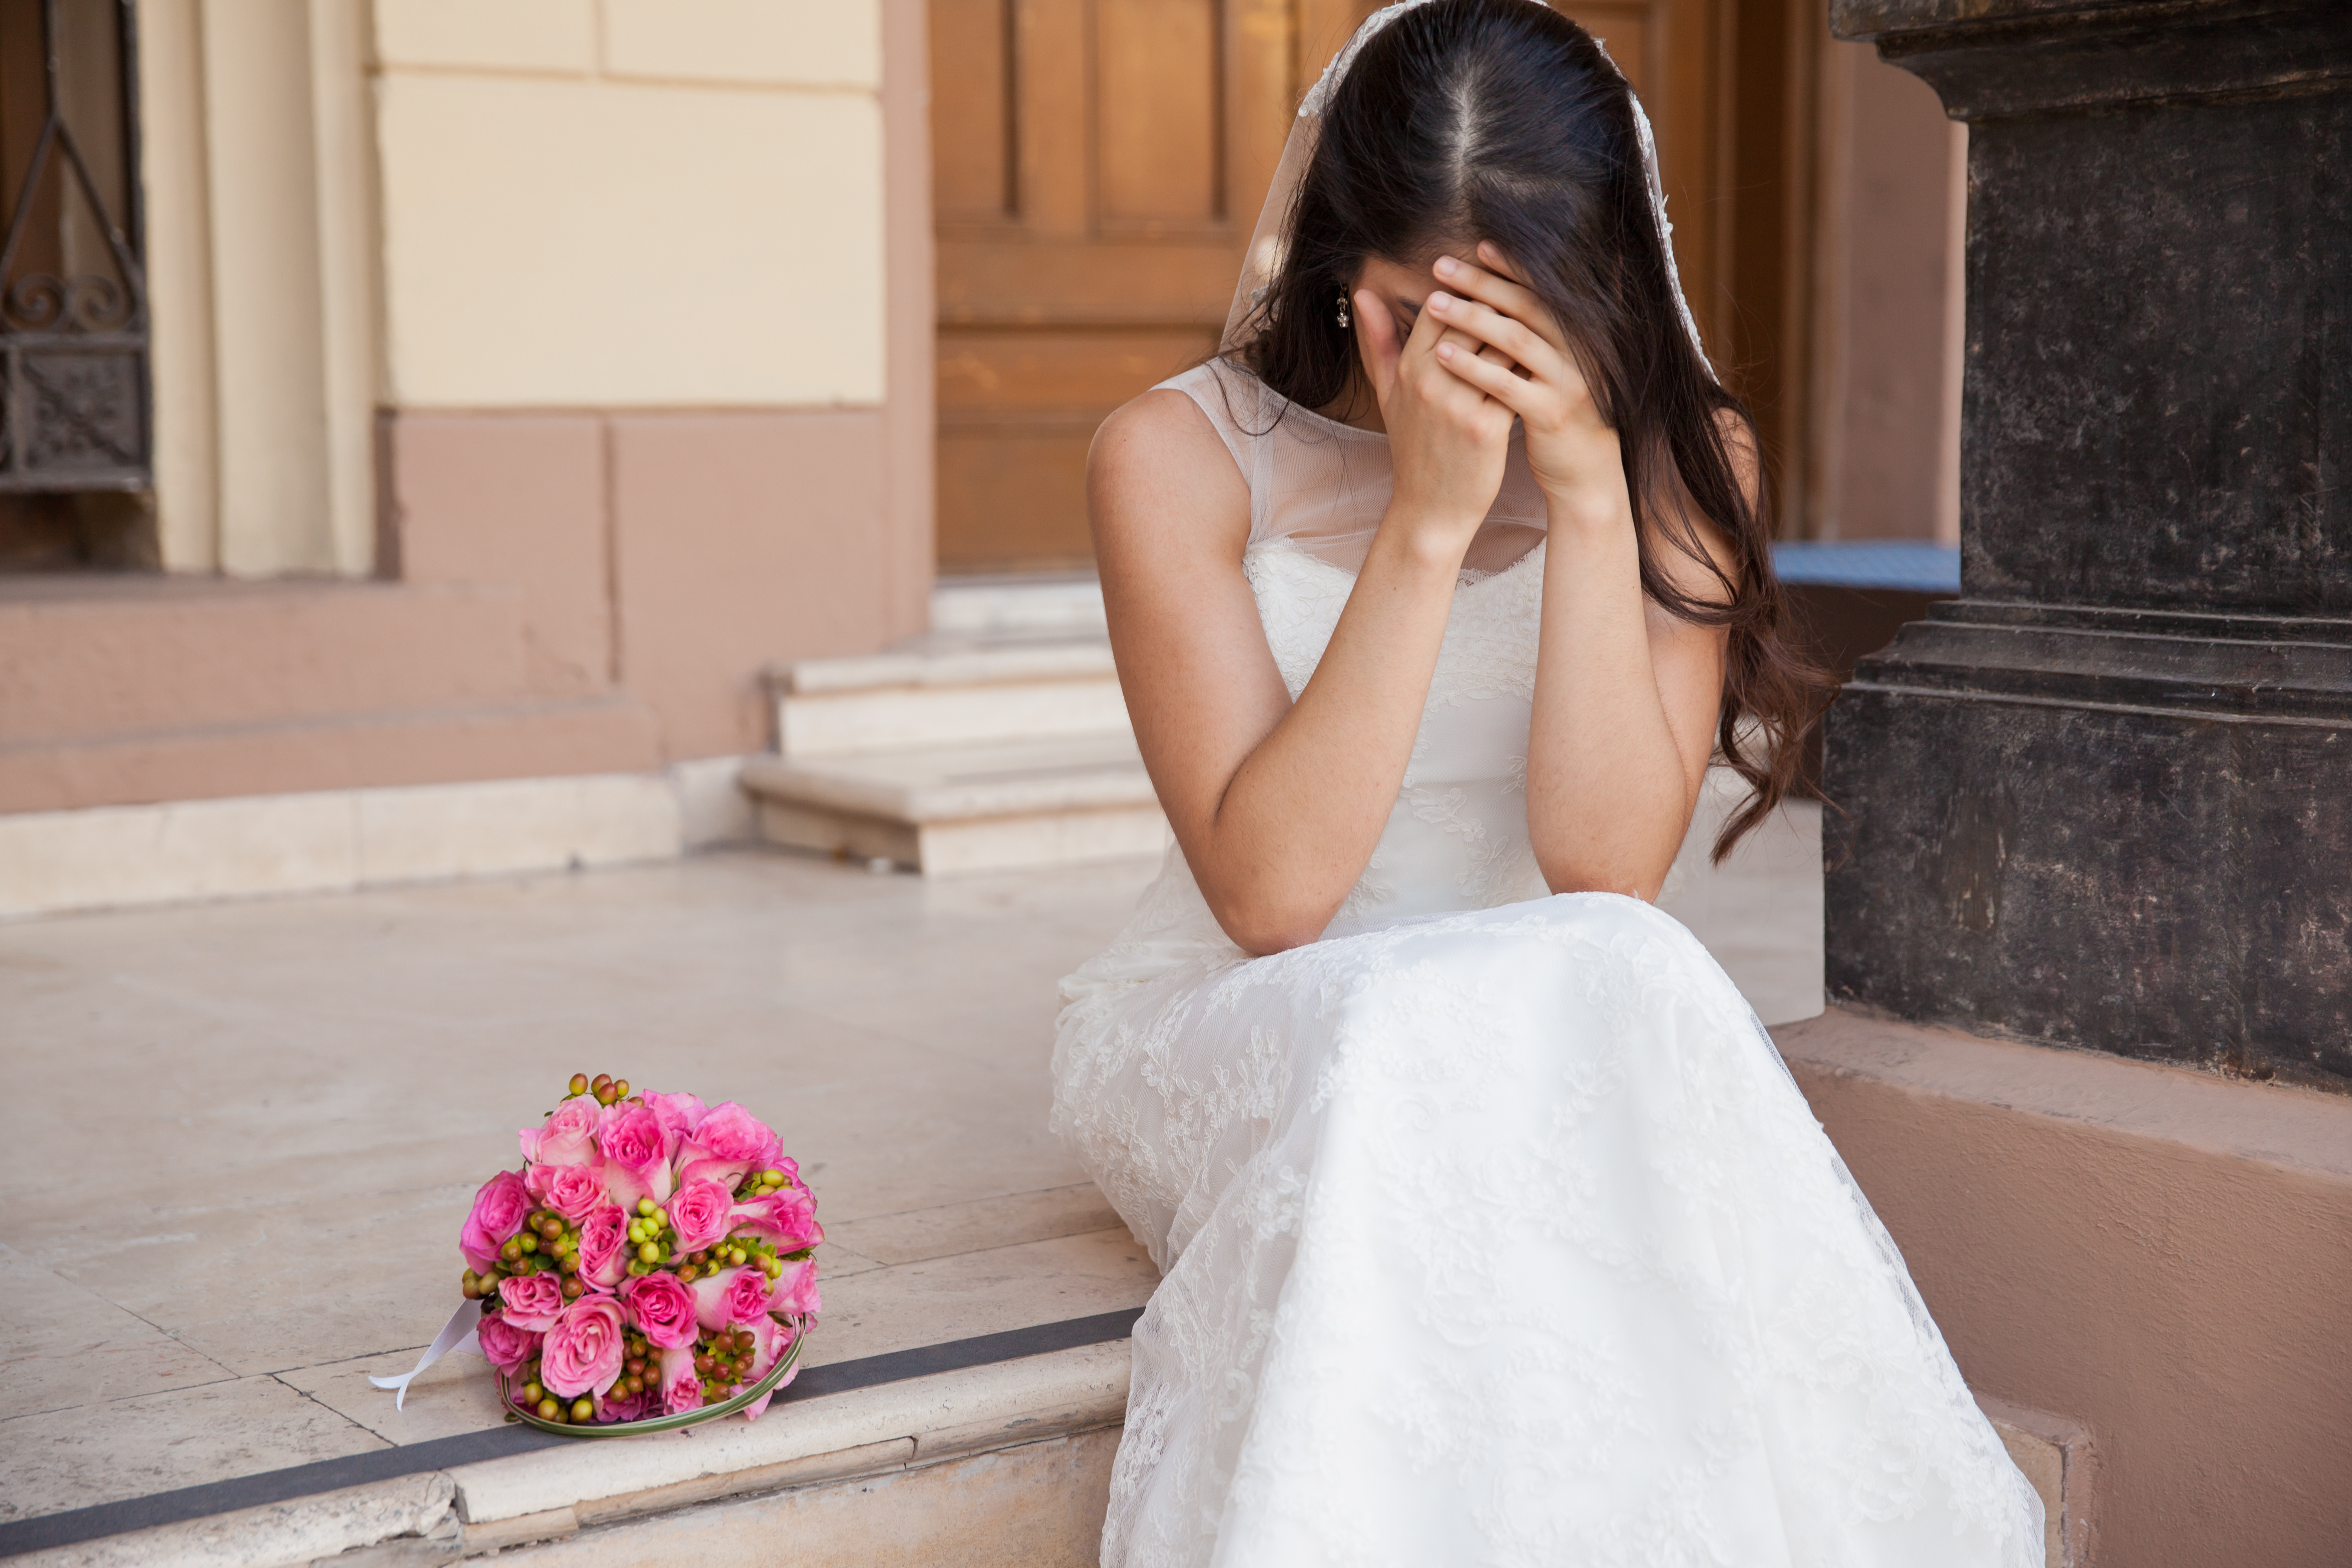 Eine weinende Braut | Quelle: Shutterstock